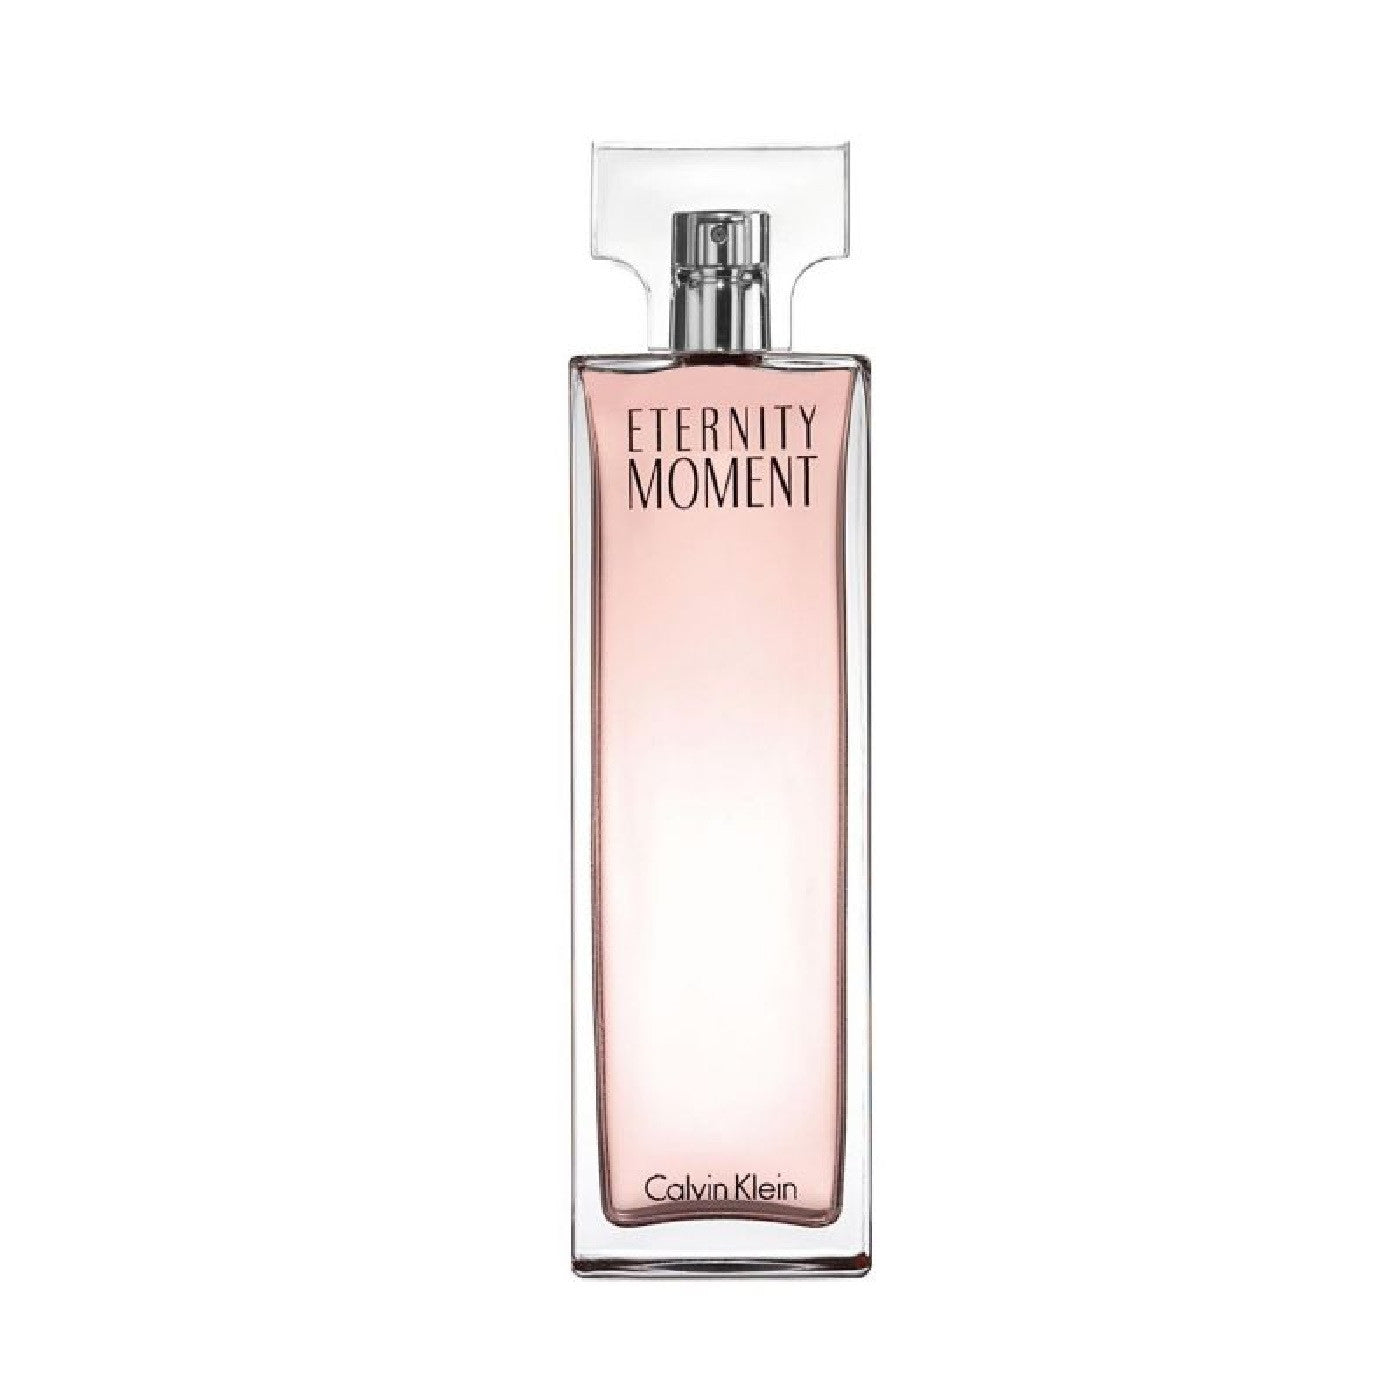 Calvin Klein Eternity Moment - Eau De Parfum 100ml